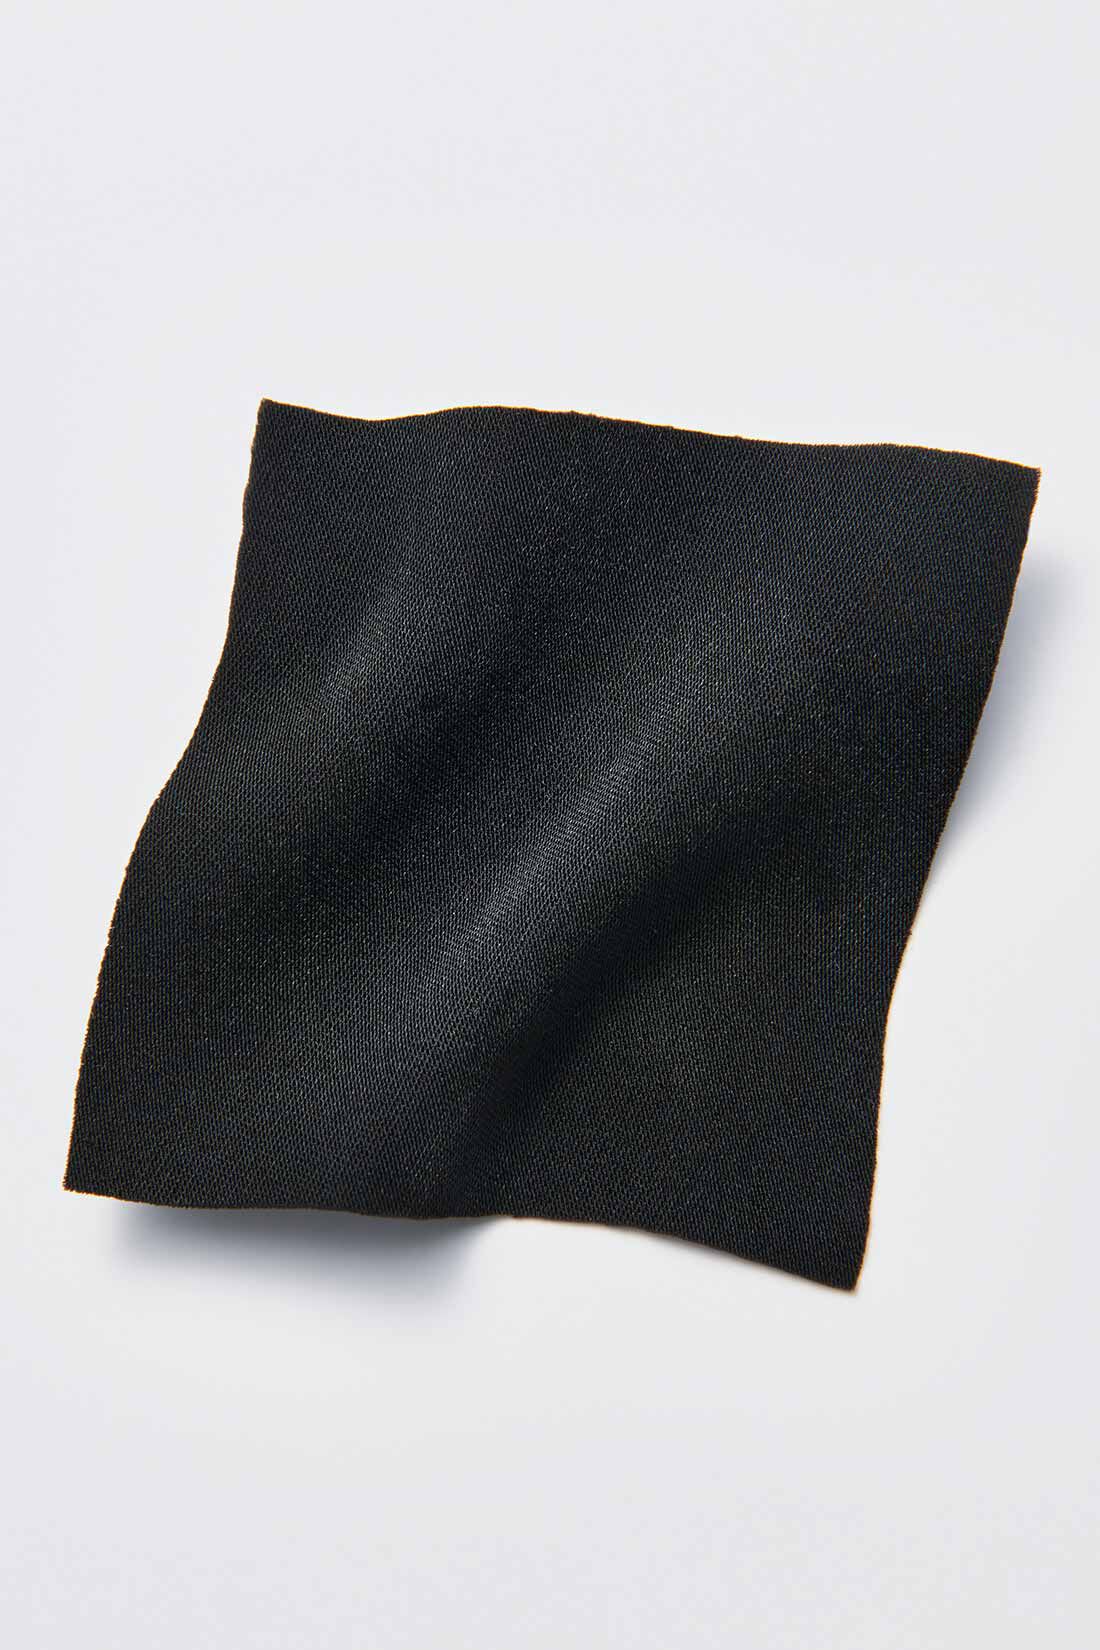 MEDE19F|MEDE19F　高山都さんコラボ ドレスライクオールインワン〈ブラック〉|しなやかな落ち感が美しいポリエステルのサテン素材。しわが気になりにくくケアも簡単。